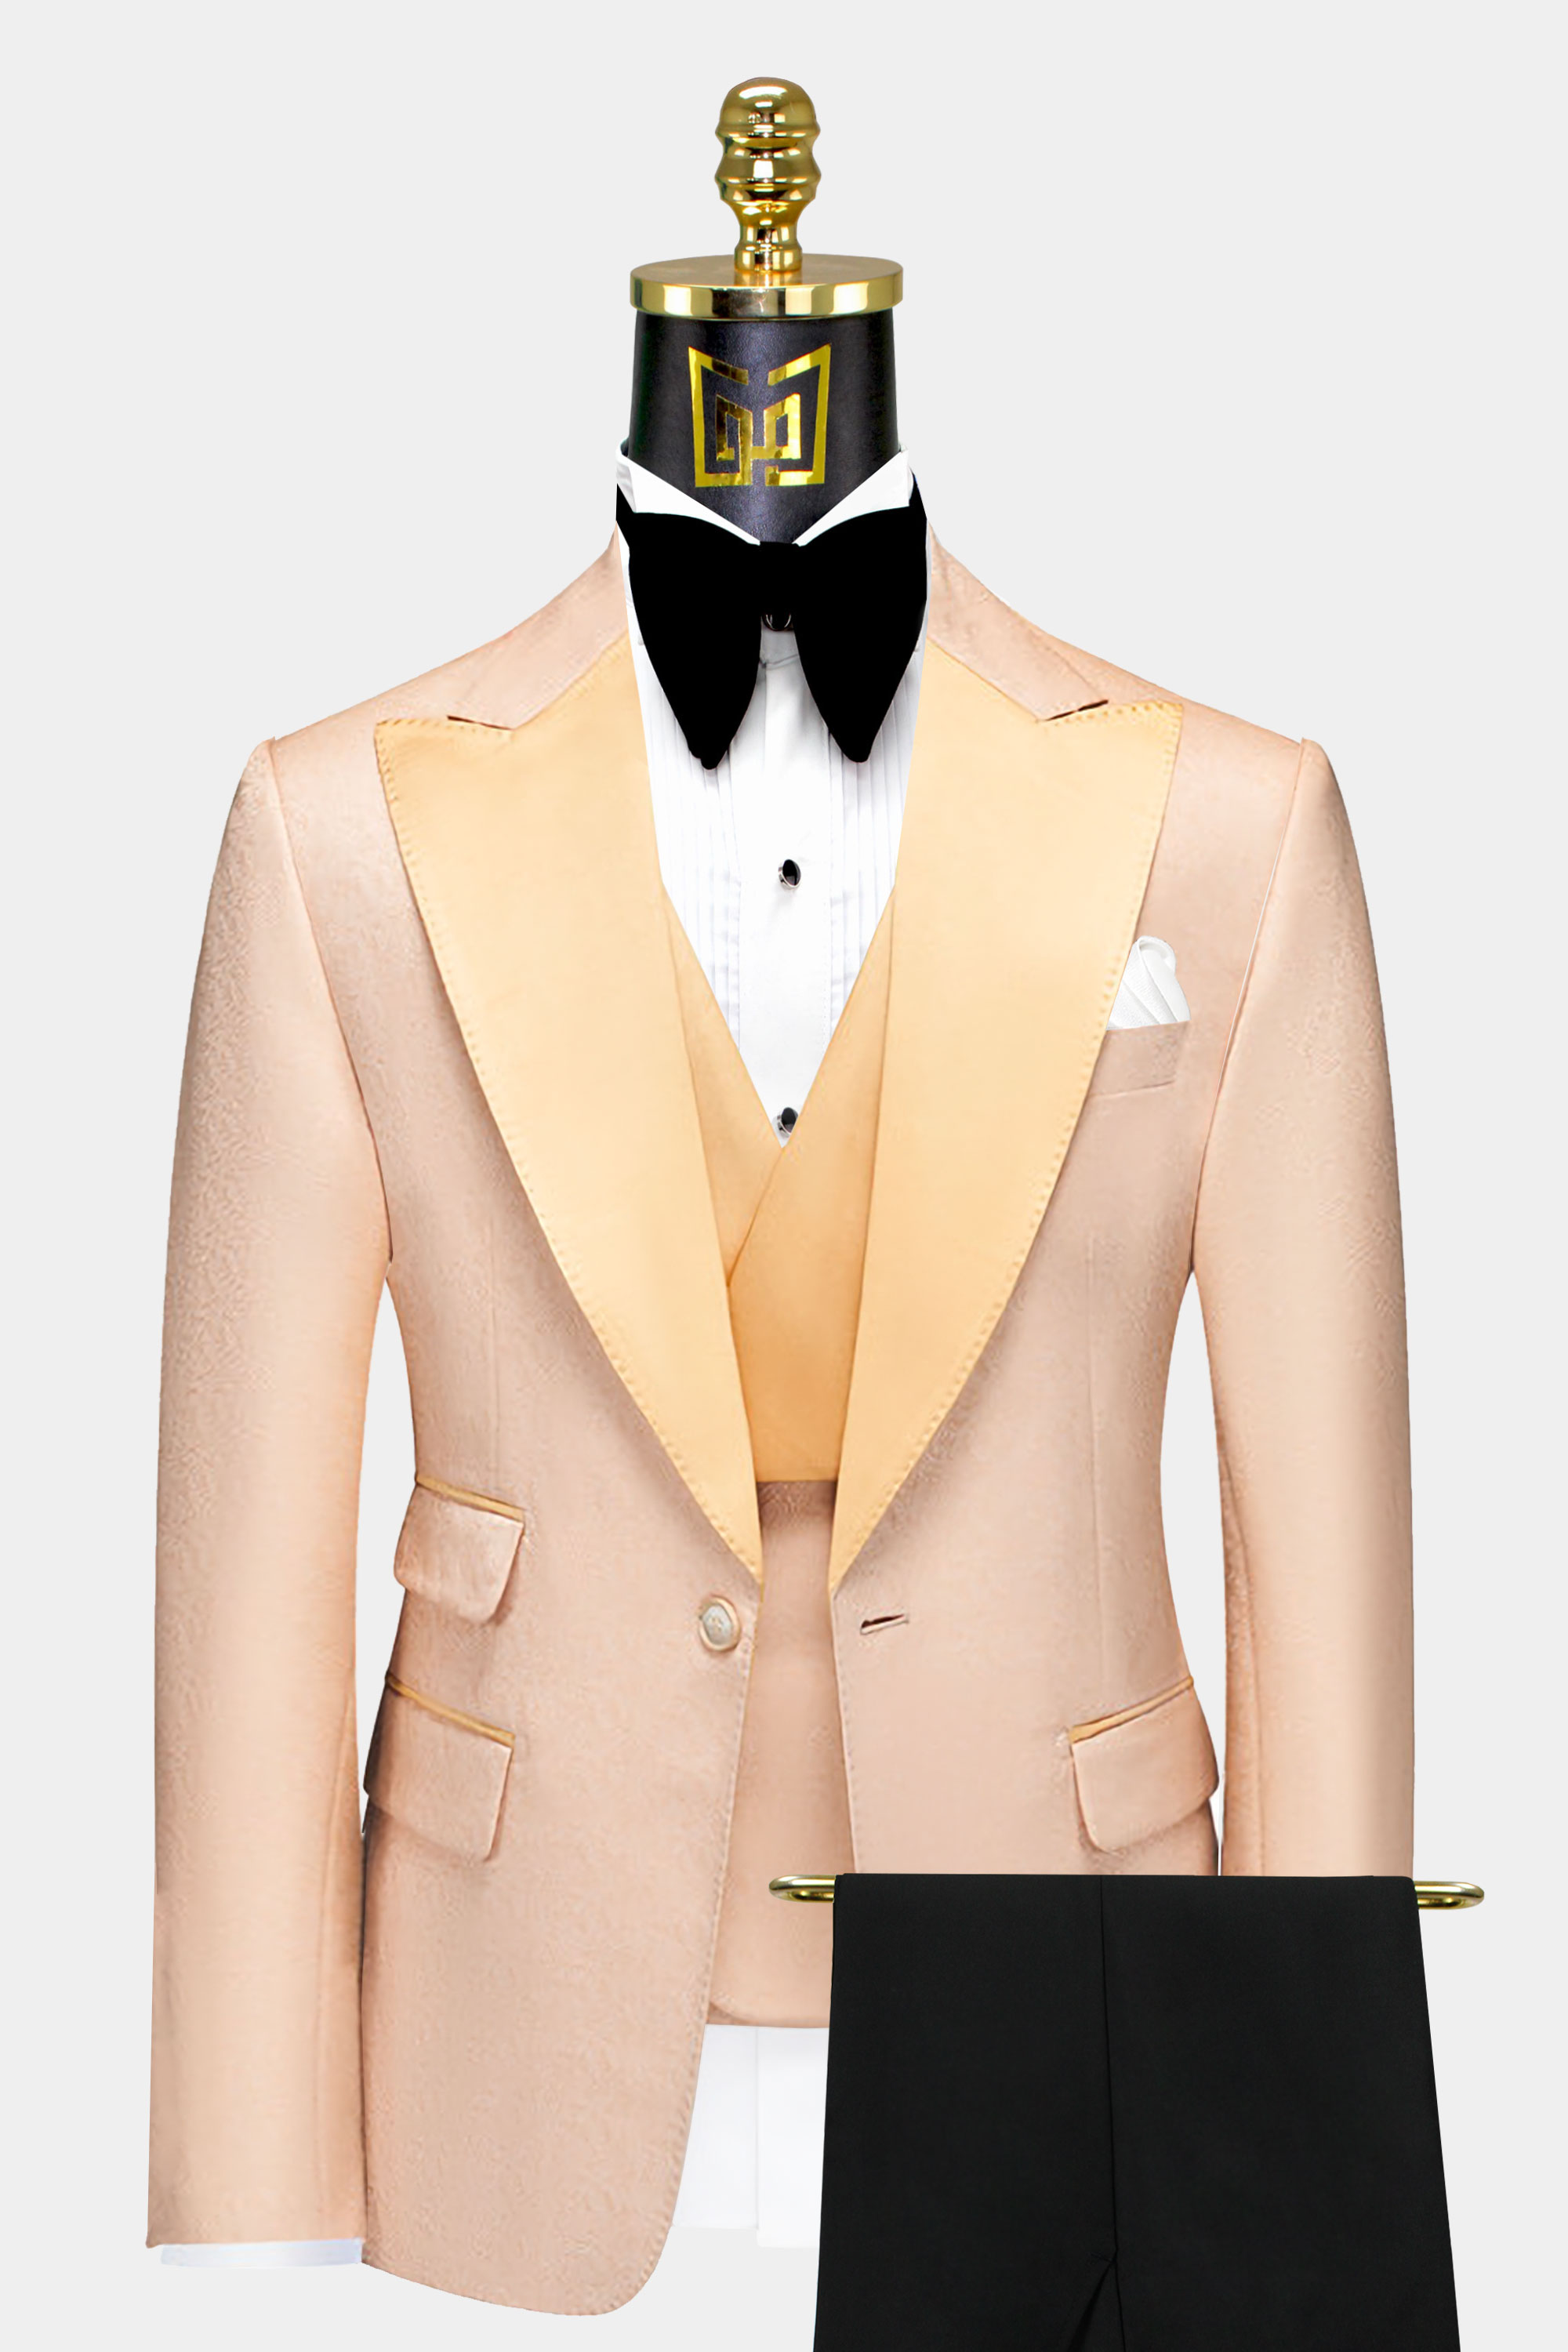 Black-and-Beige-Tuxedo-Prom-Groom-Wedding-Suit-from-Gentlemansguru.com